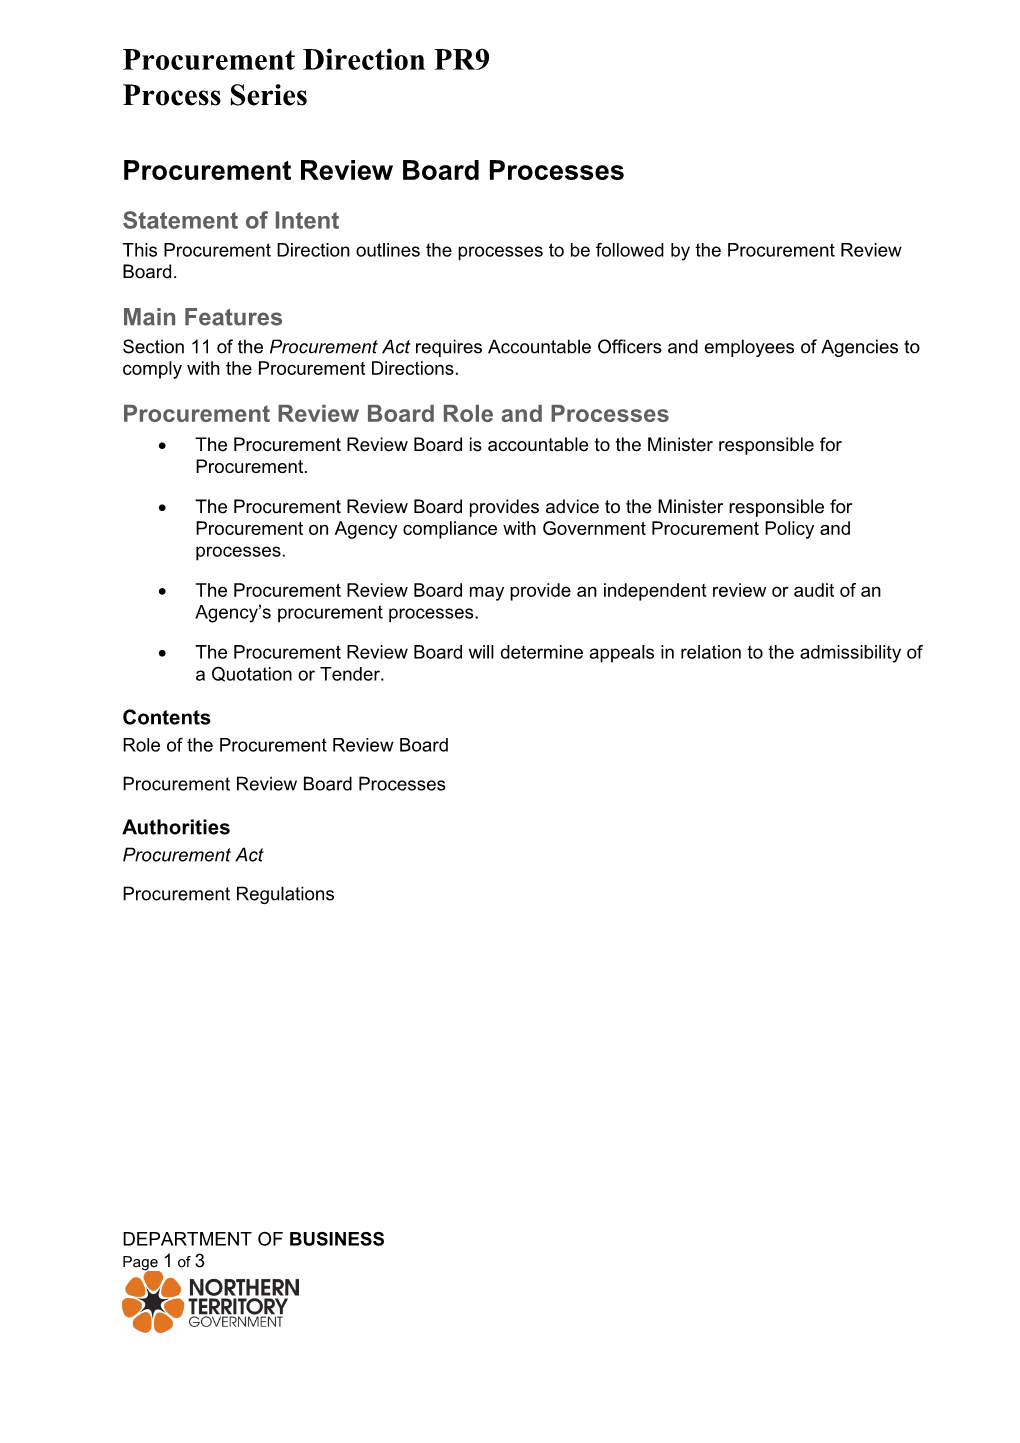 Procurement Review Board Processes - PR9